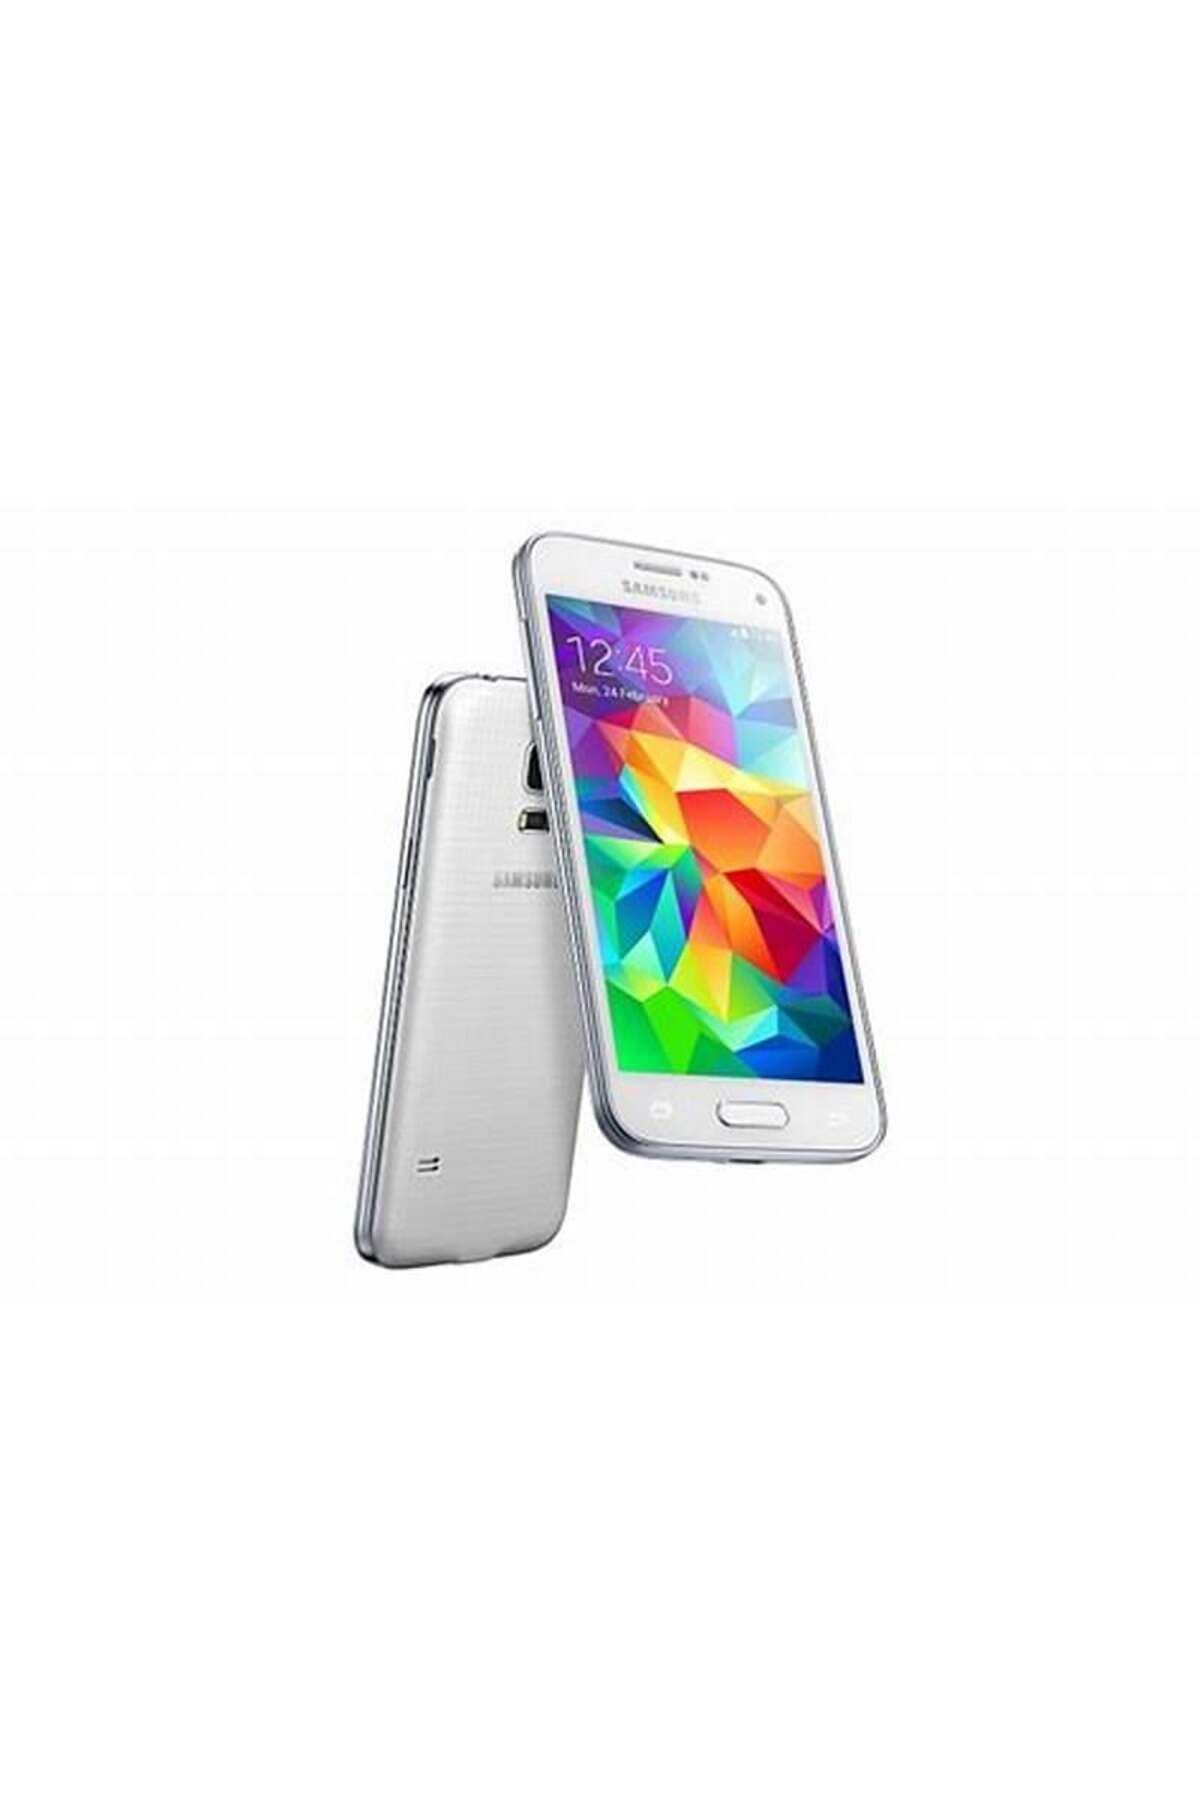 Samsung Galaxy S5 Mini 16 GB Yenilenmiş Cep Telefonu (12 Ay Osm Bilişim Garantili)